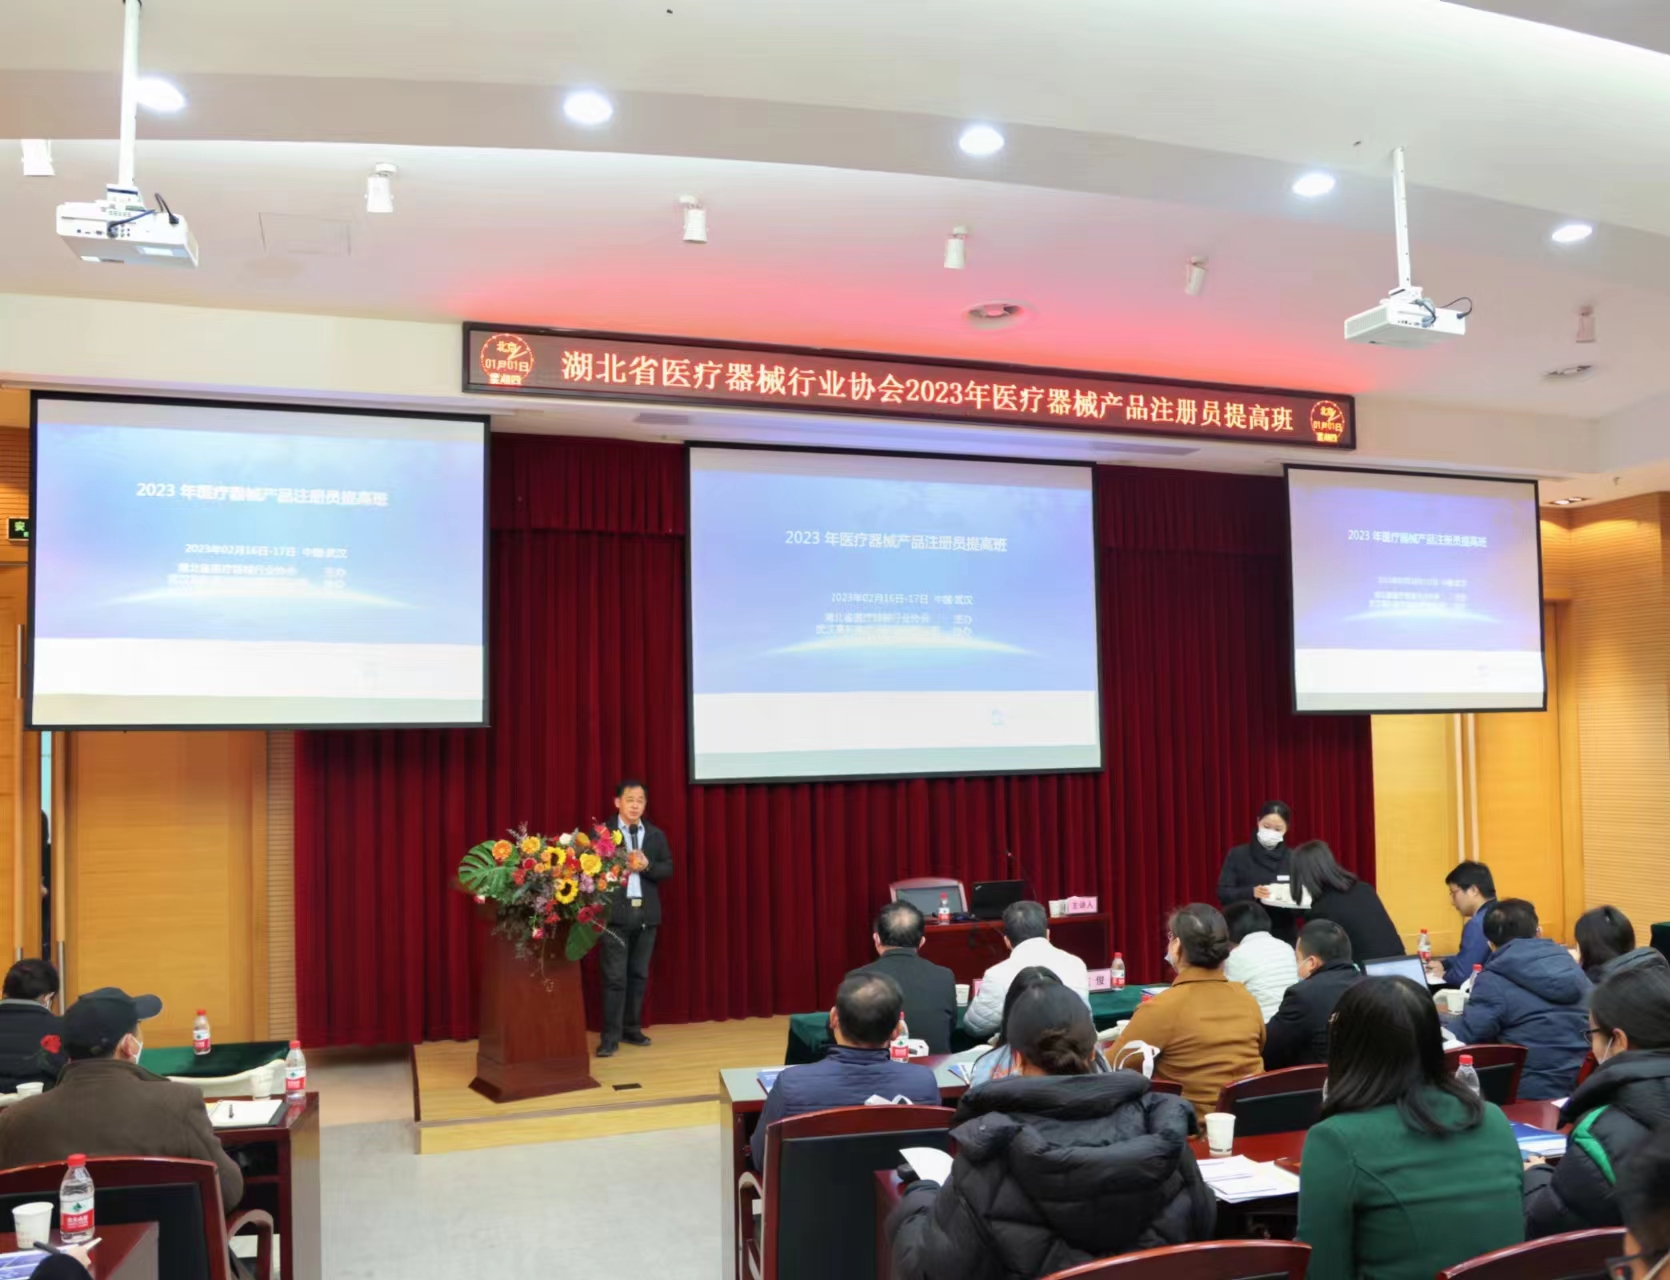 湖北省医疗器械注册员提高专项培训班在武汉顺利举行